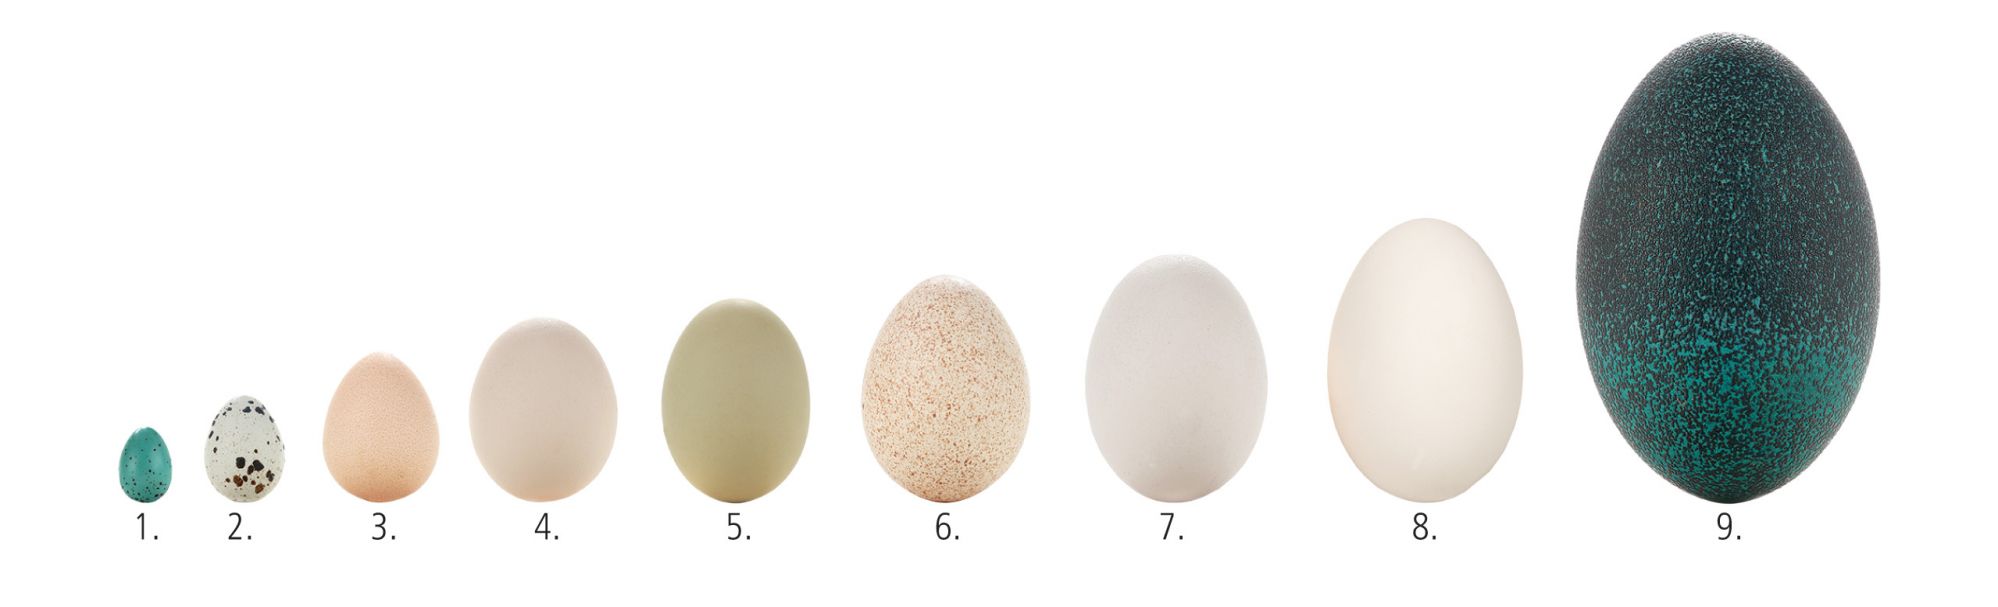 Takie jajka znoszą: 1. Drozd 2. Przepiórka 3. Perliczka 4. i 5. Kura  6. Indyk 7. Kaczka 8. Gęś 9. Struś emu